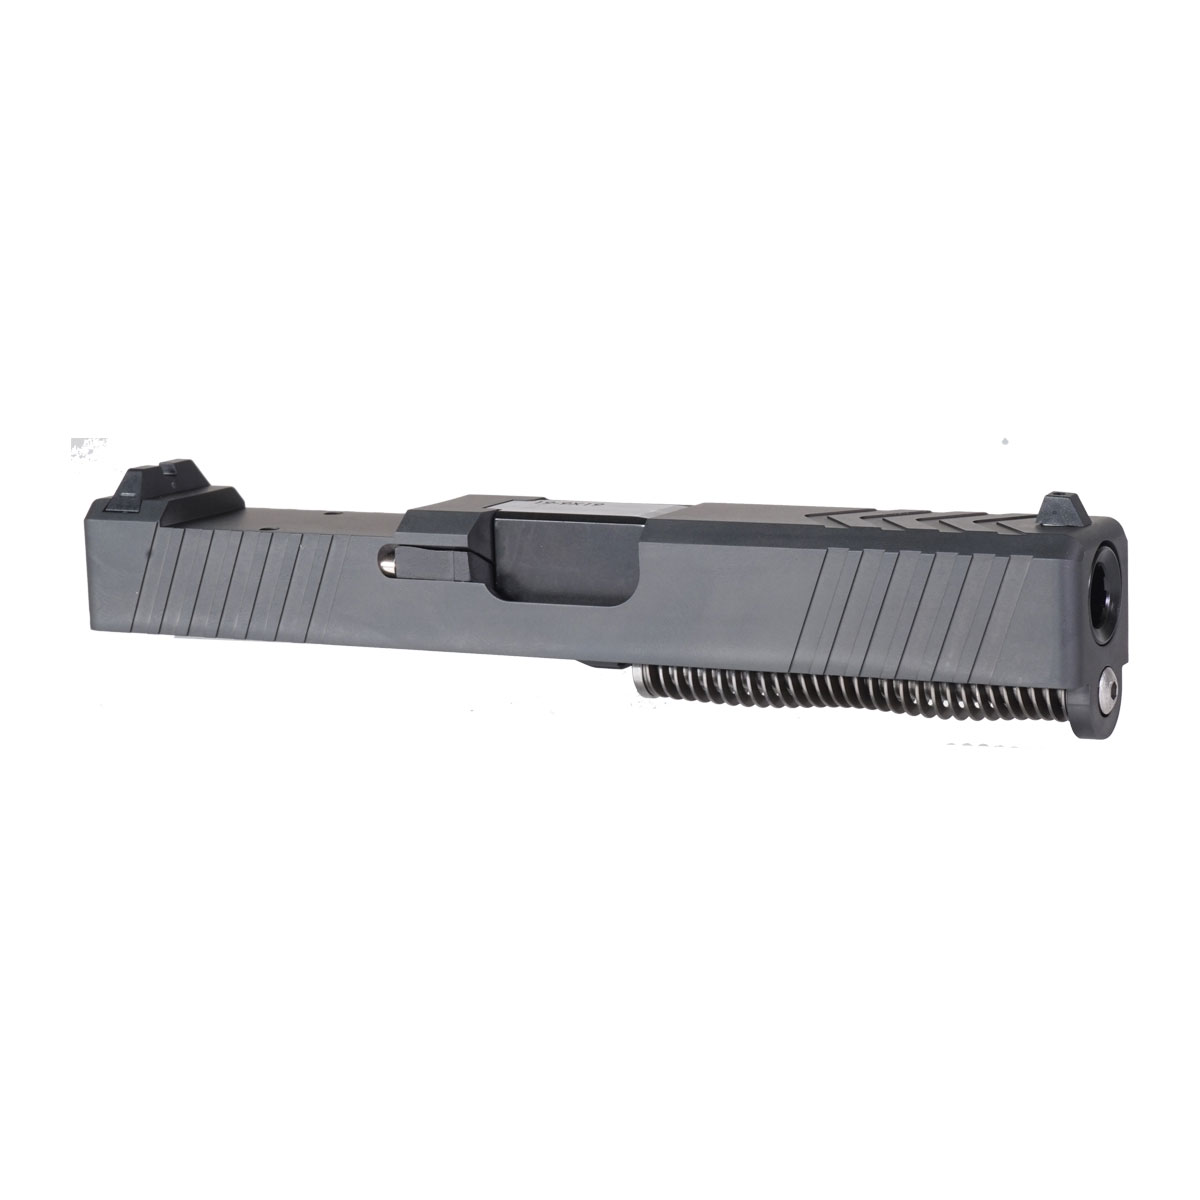 DTT 'The Petersen' 9mm Complete Slide Kit - Glock 19 Gen 1-3 Compatible